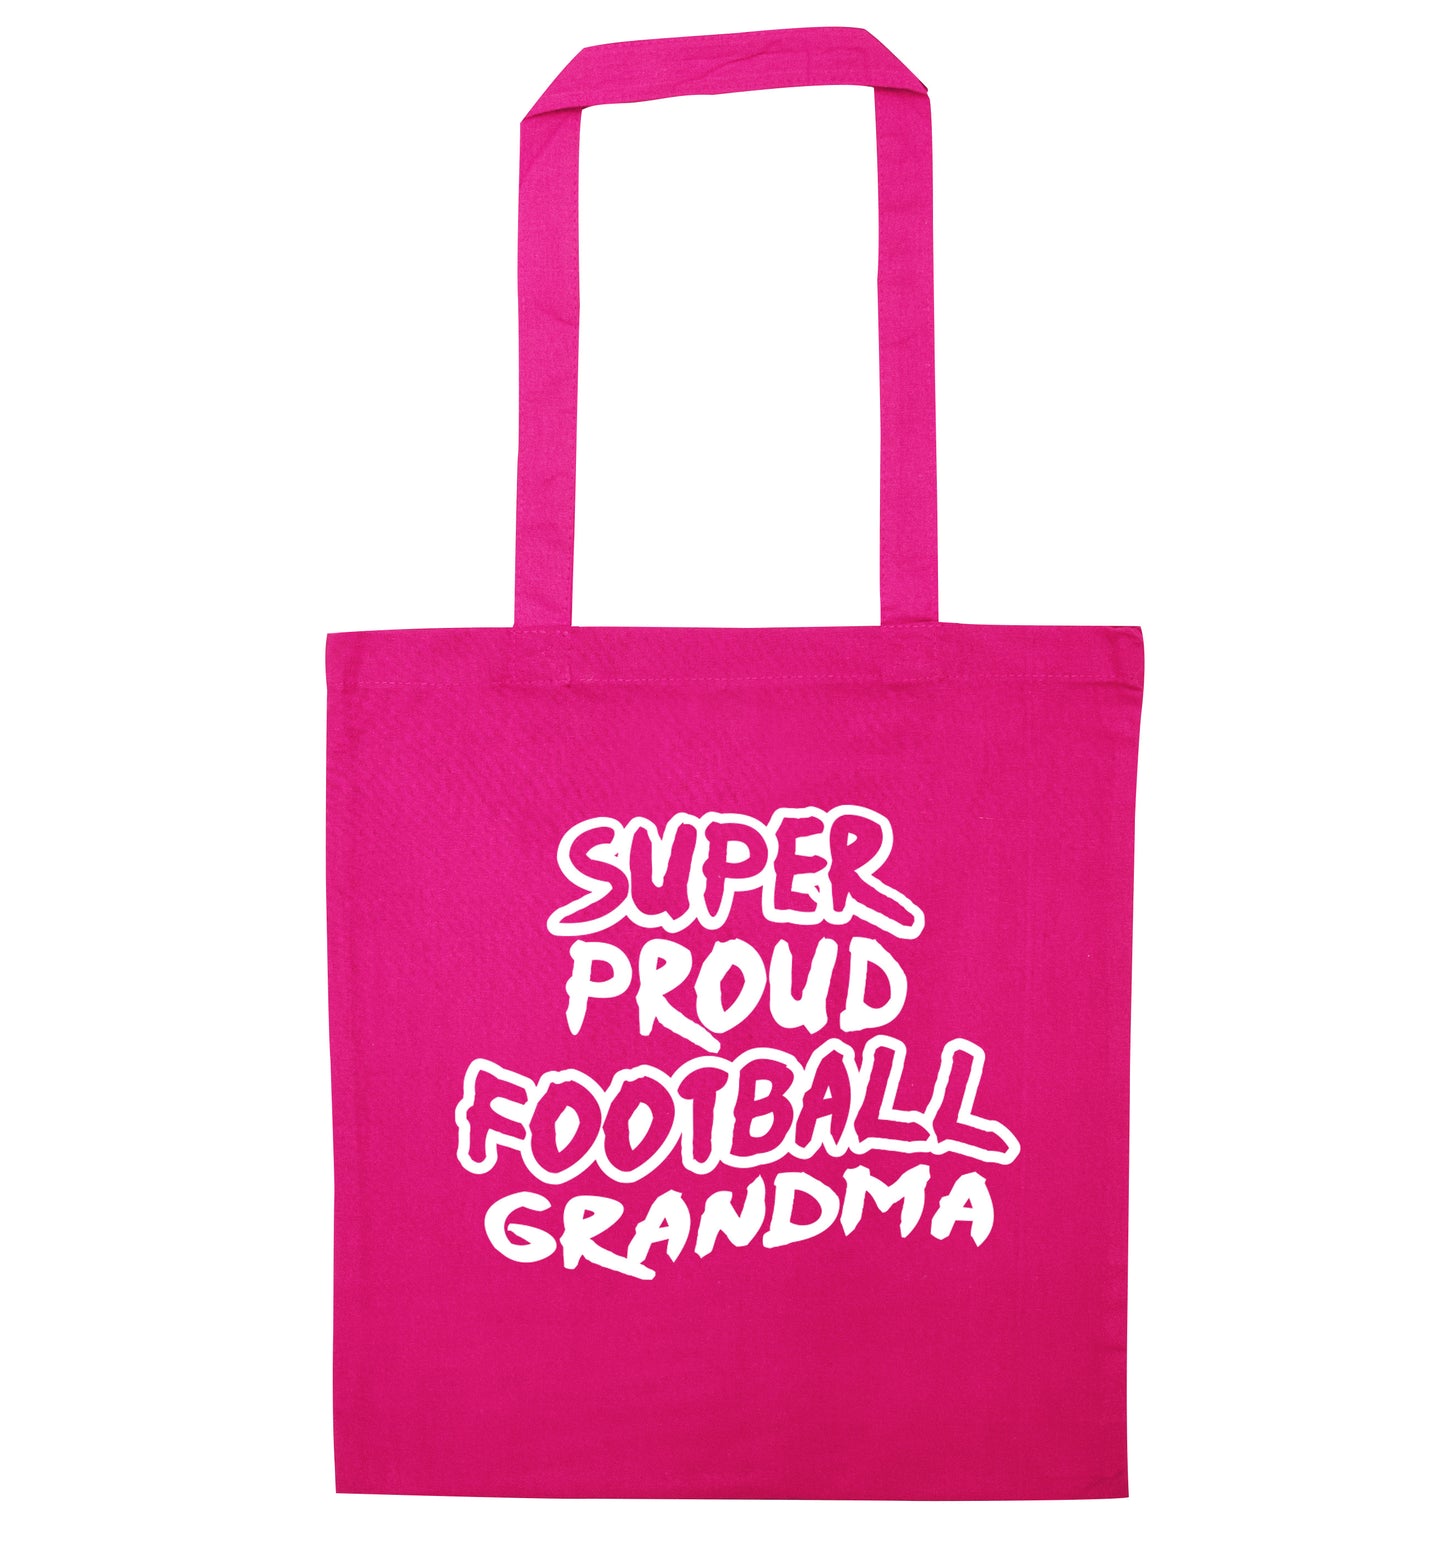 Super proud football grandma pink tote bag